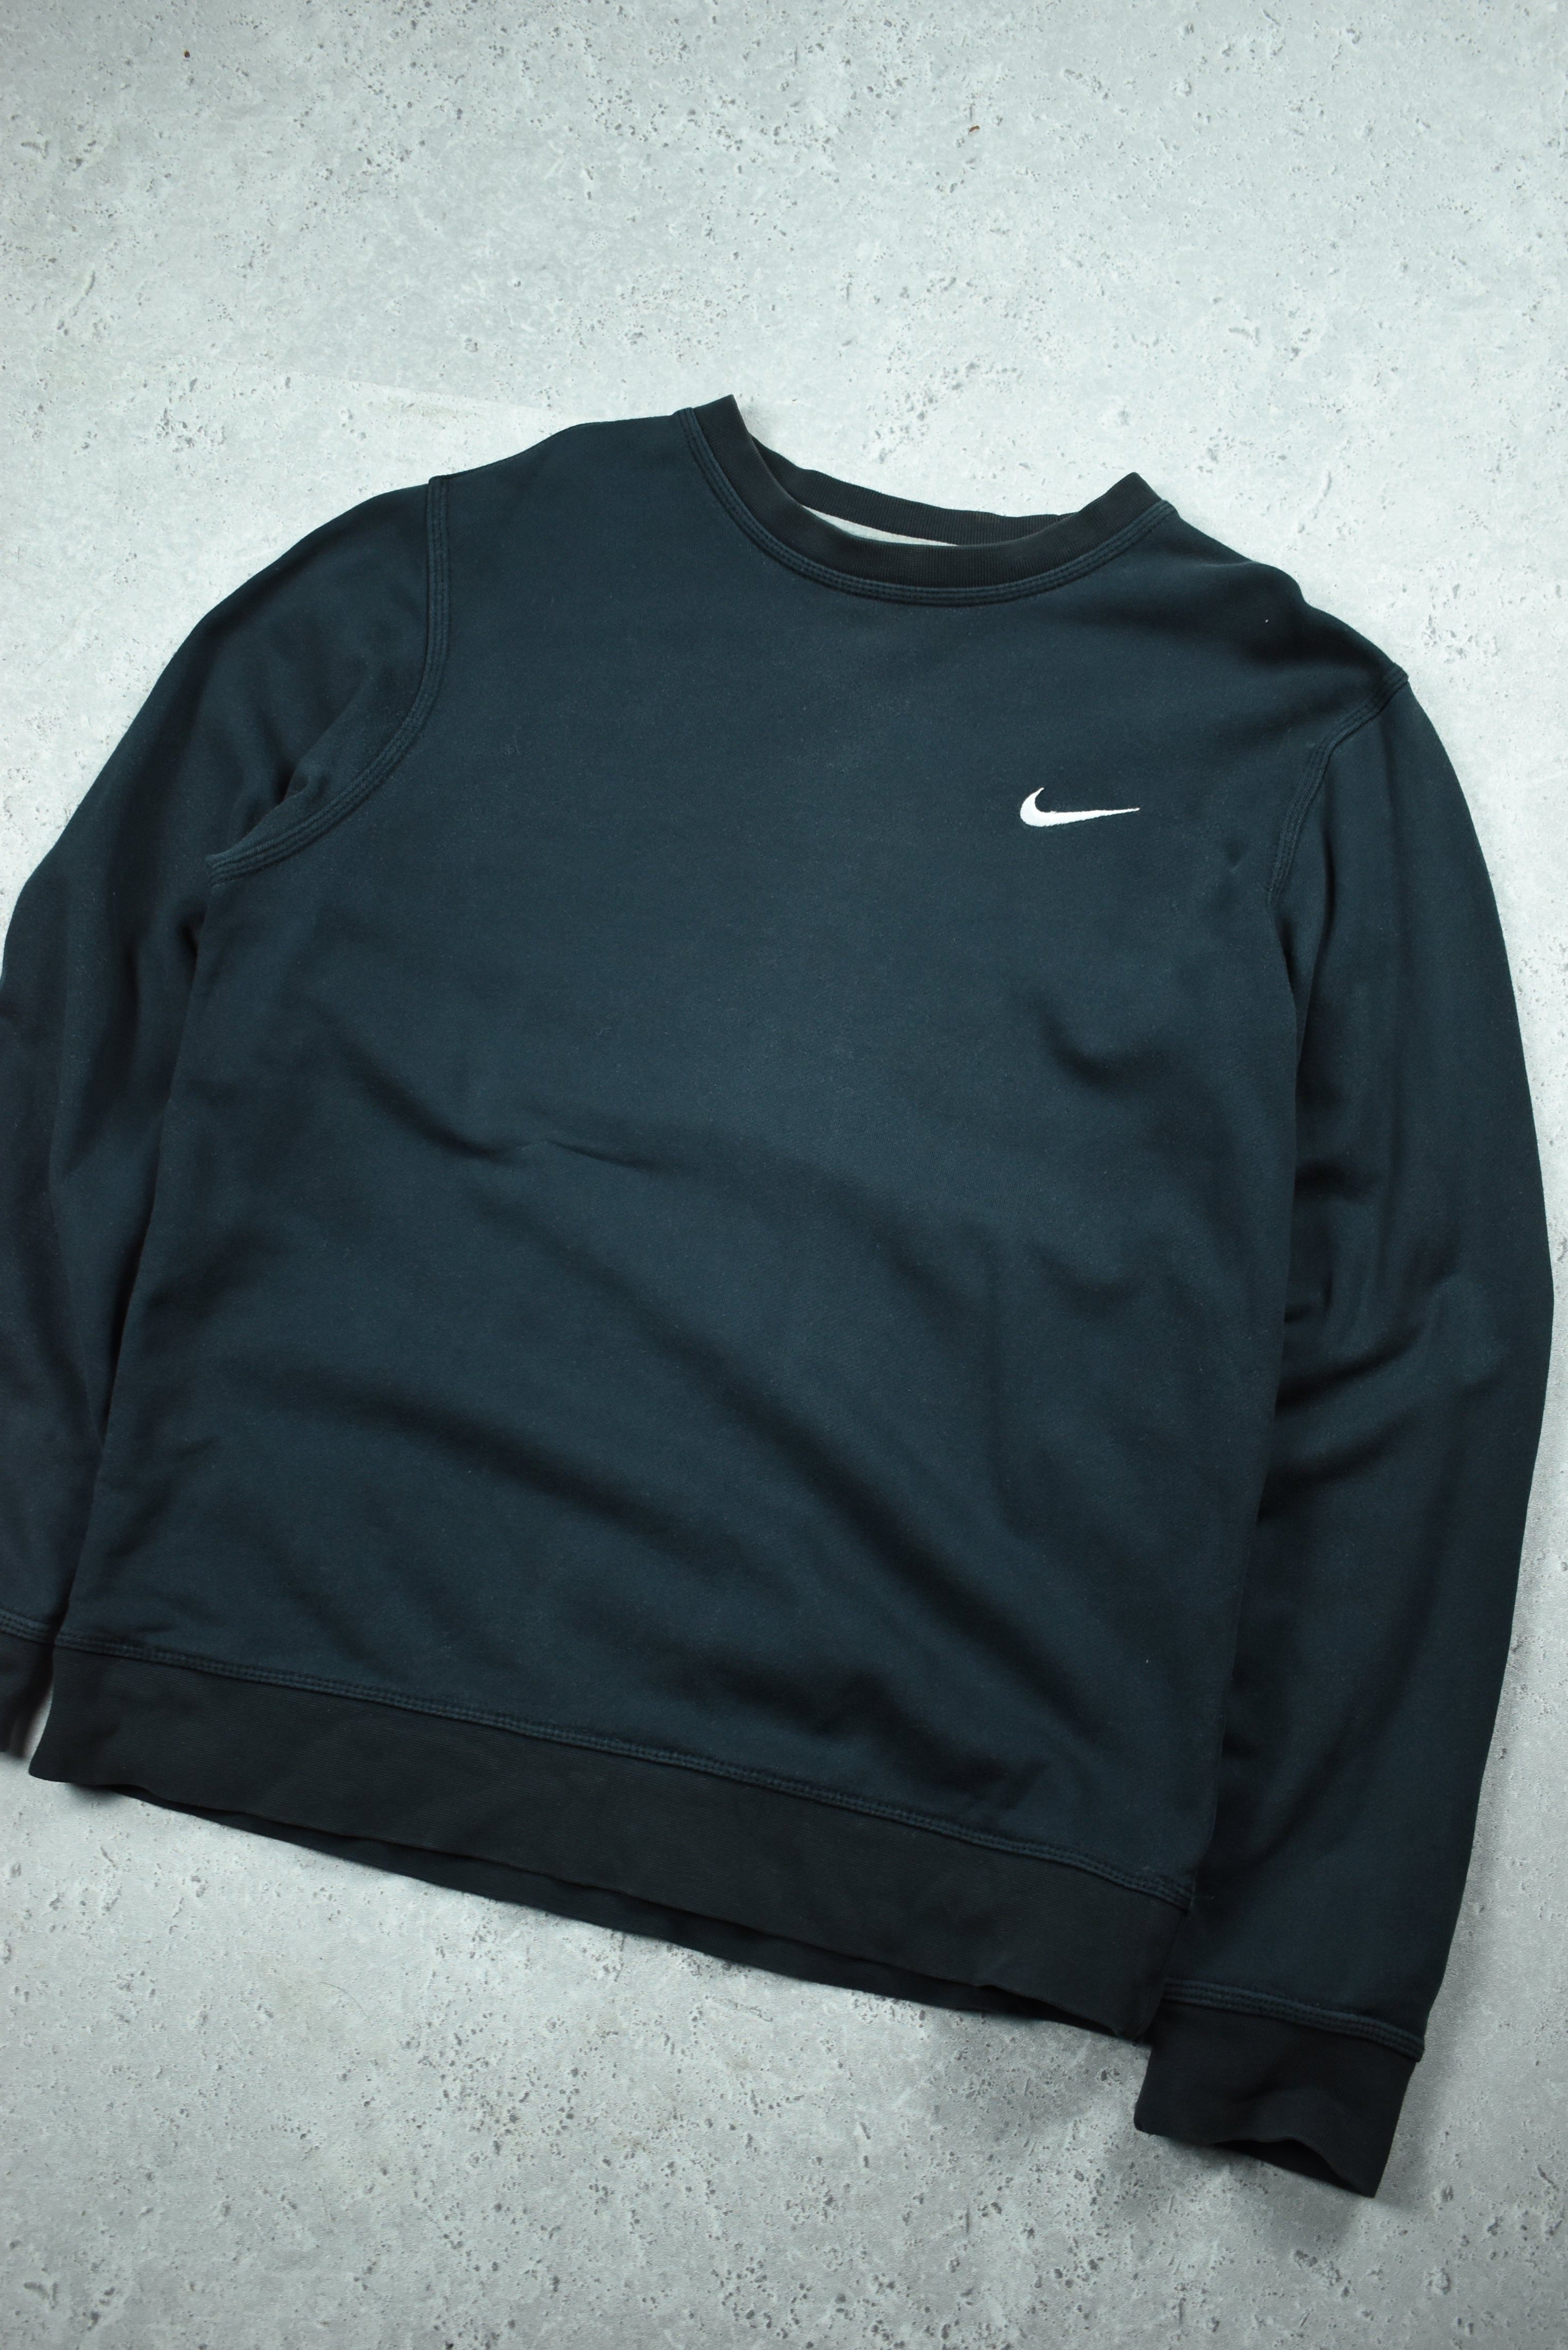 Vintage Nike Embroidery Small Swoosh Sweatshirt Medium